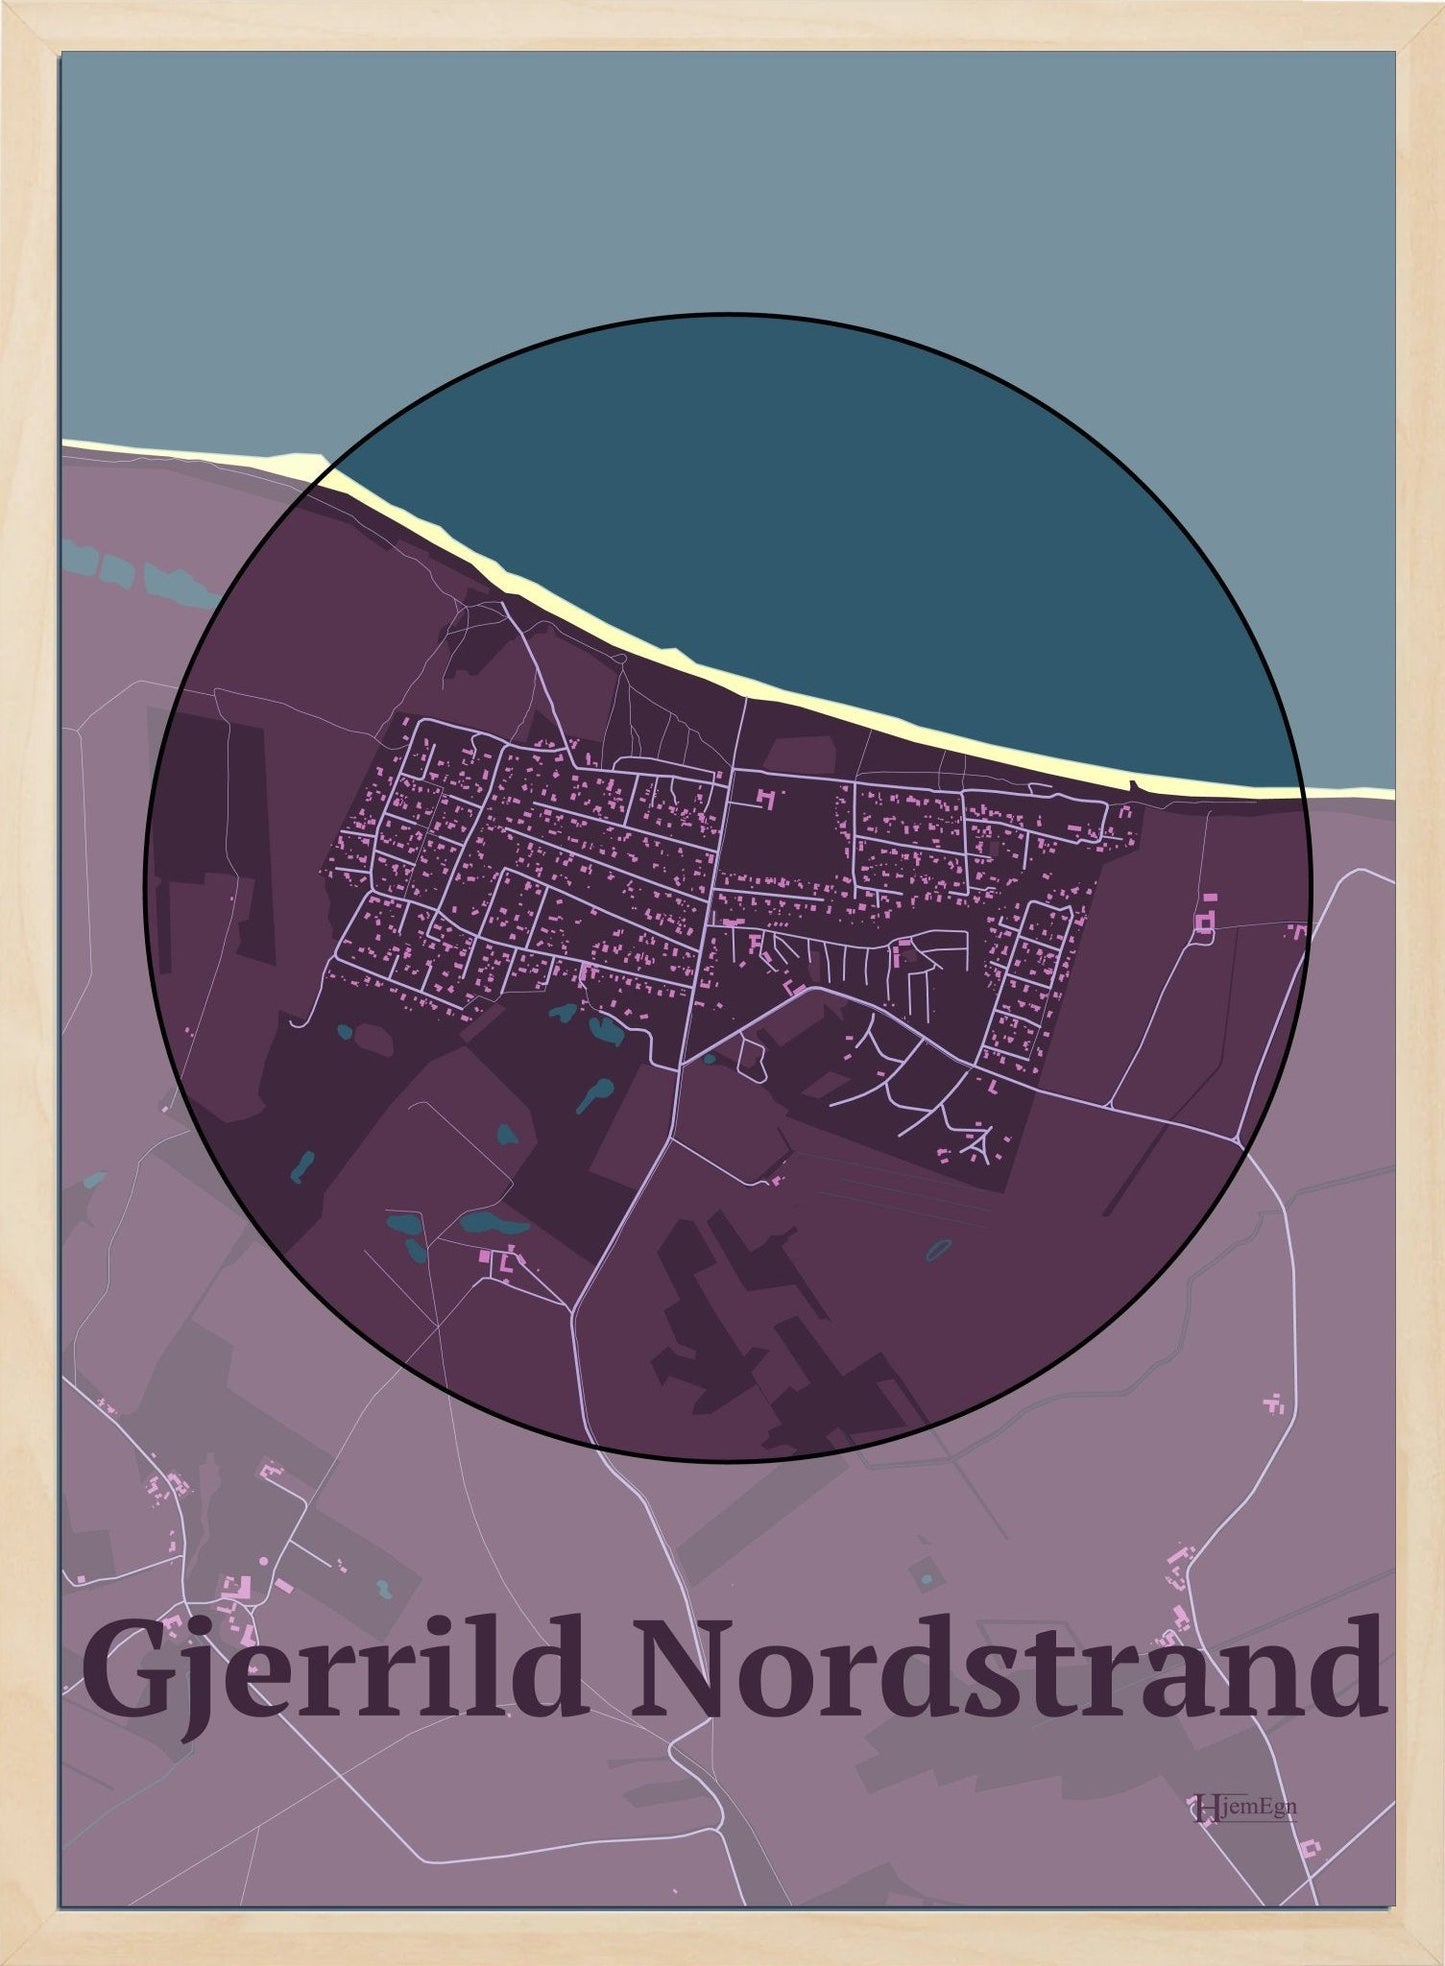 Gjerrild Nordstrand plakat i farve mørk rød og HjemEgn.dk design centrum. Design bykort for Gjerrild Nordstrand